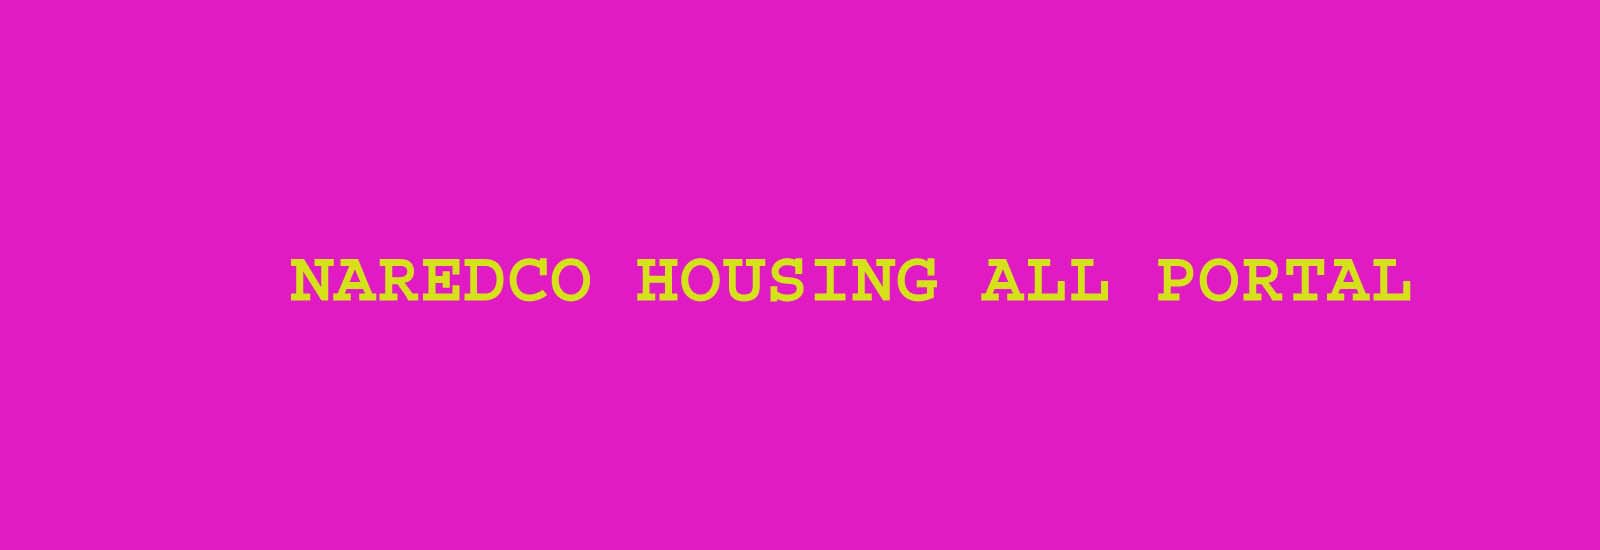 Naredco Housing All Portal : फ्लैट की बुकिंग केवल Rs 25000 में, ऑनलाइन घर की खरीदारी